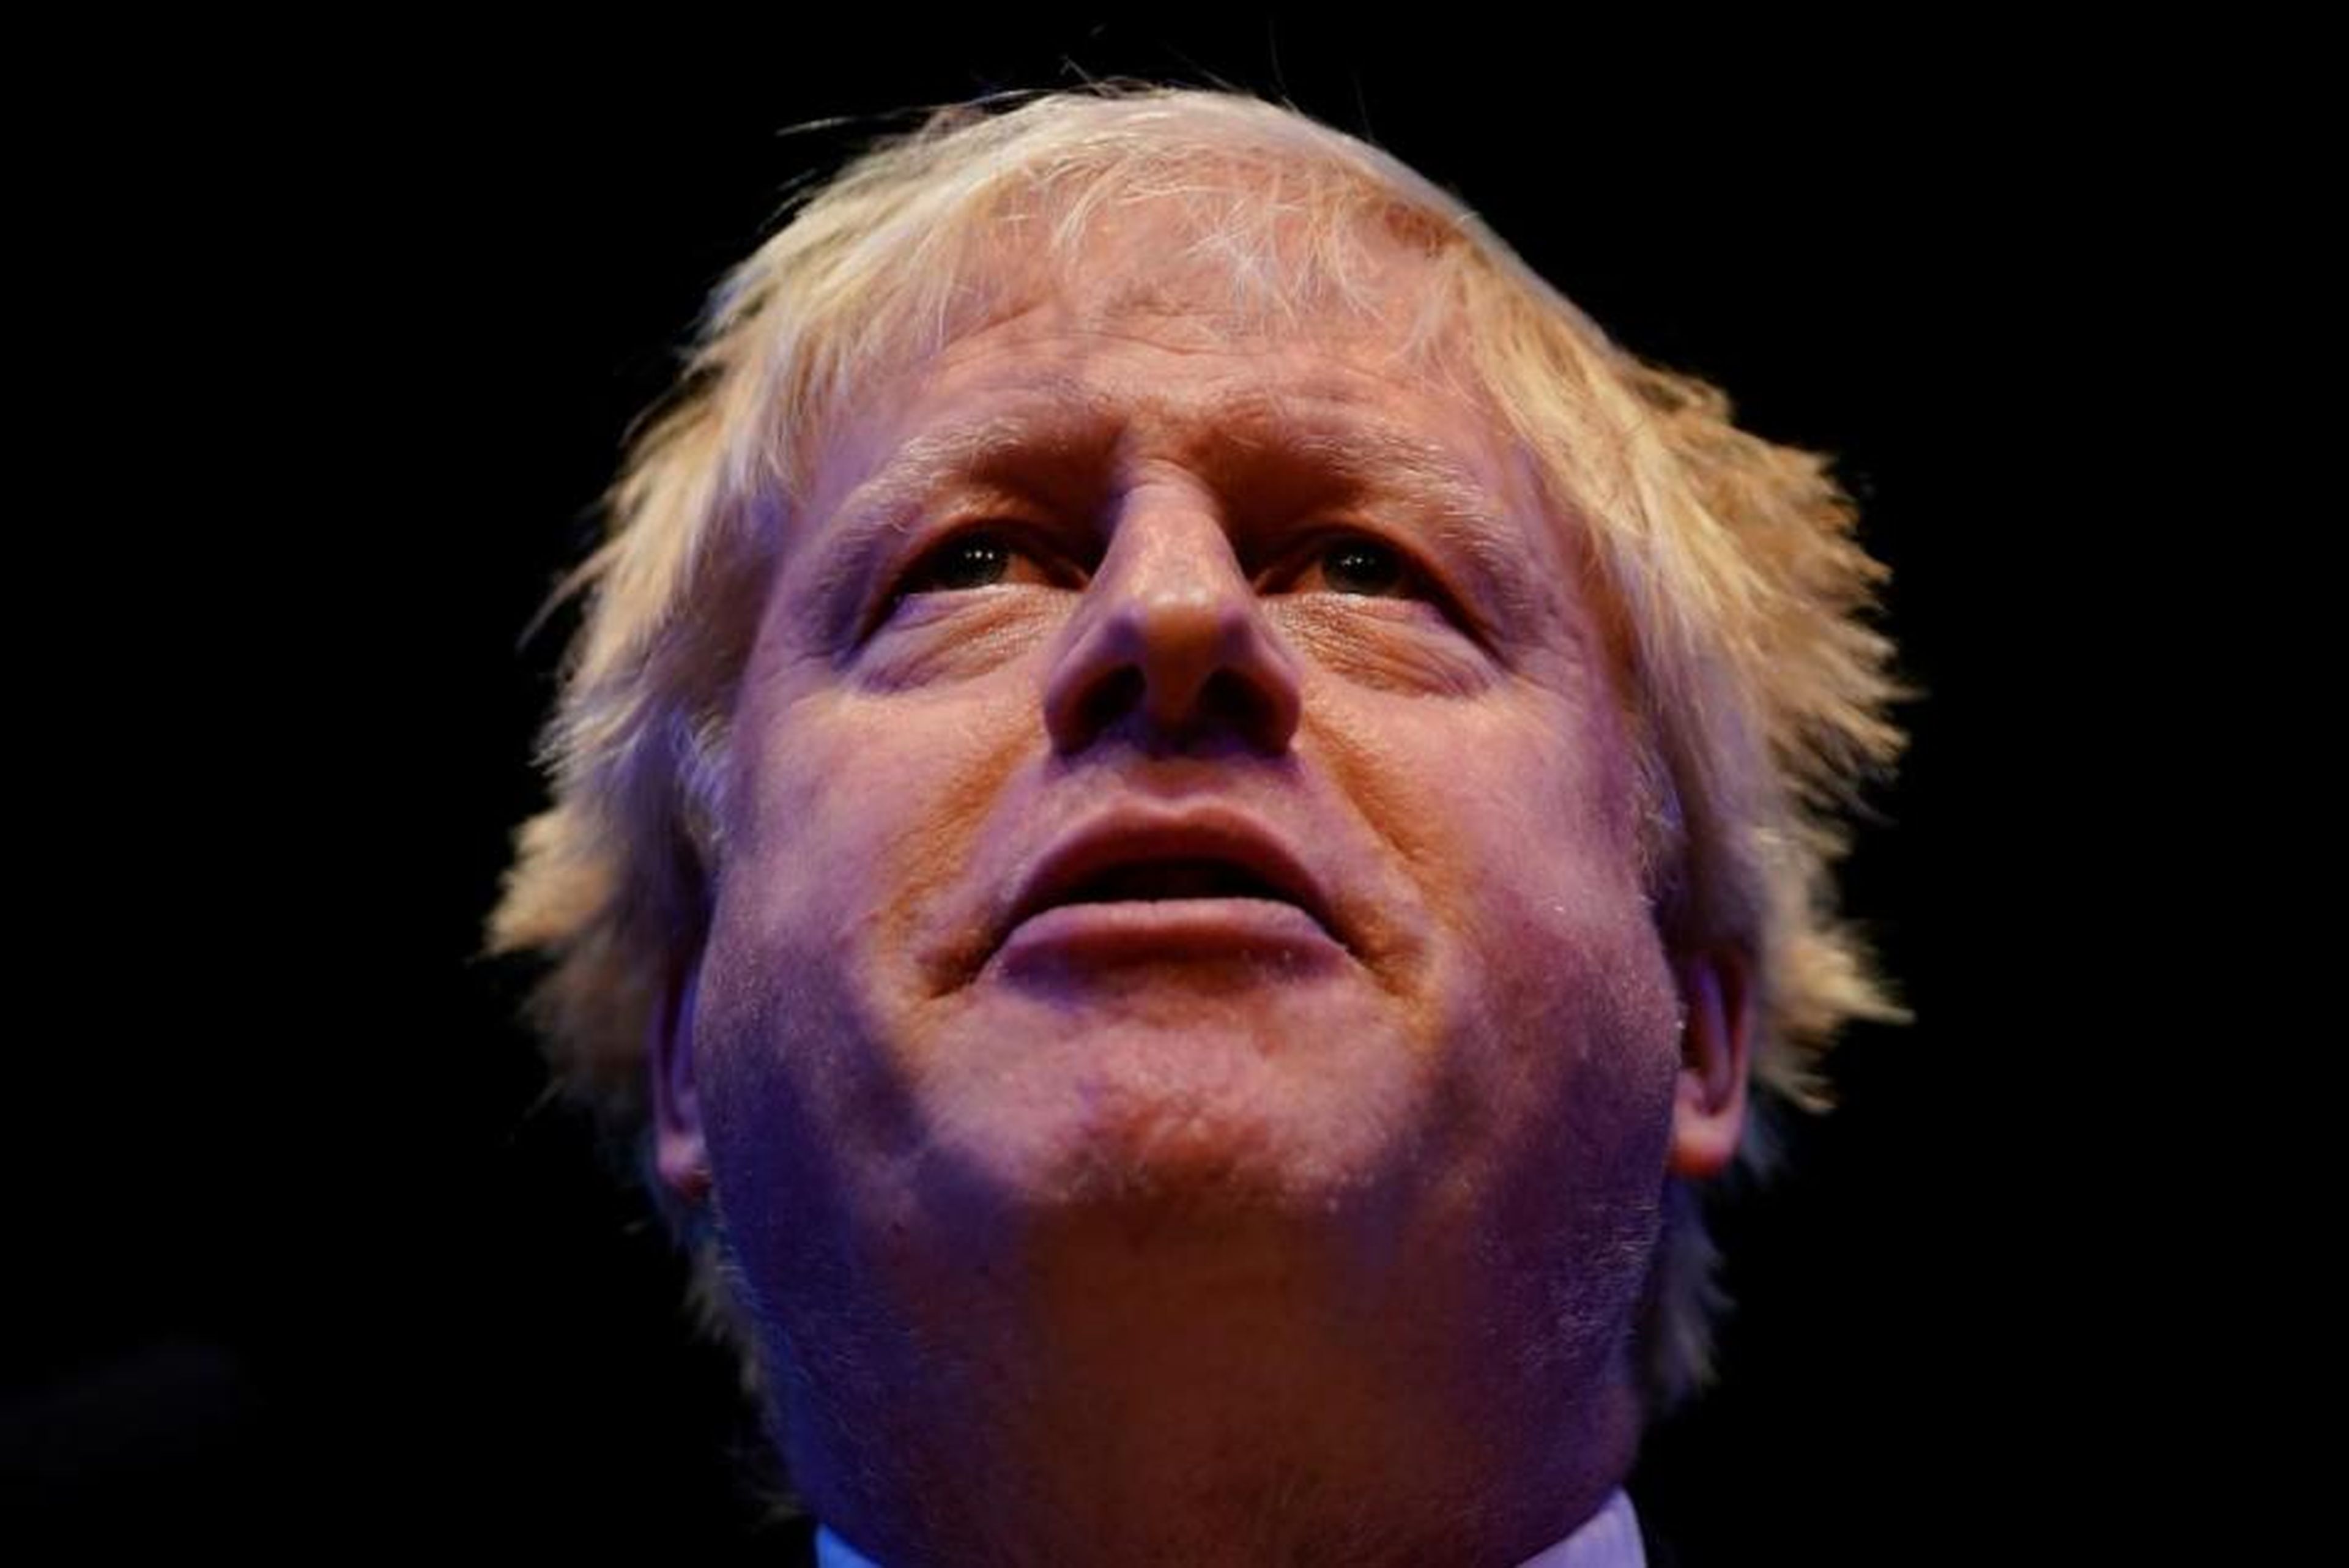 Una encuesta reciente señala que el 60% de los votantes del partido de Johnson cree que carece de las cualidades necesarias para ser un buen primer ministro